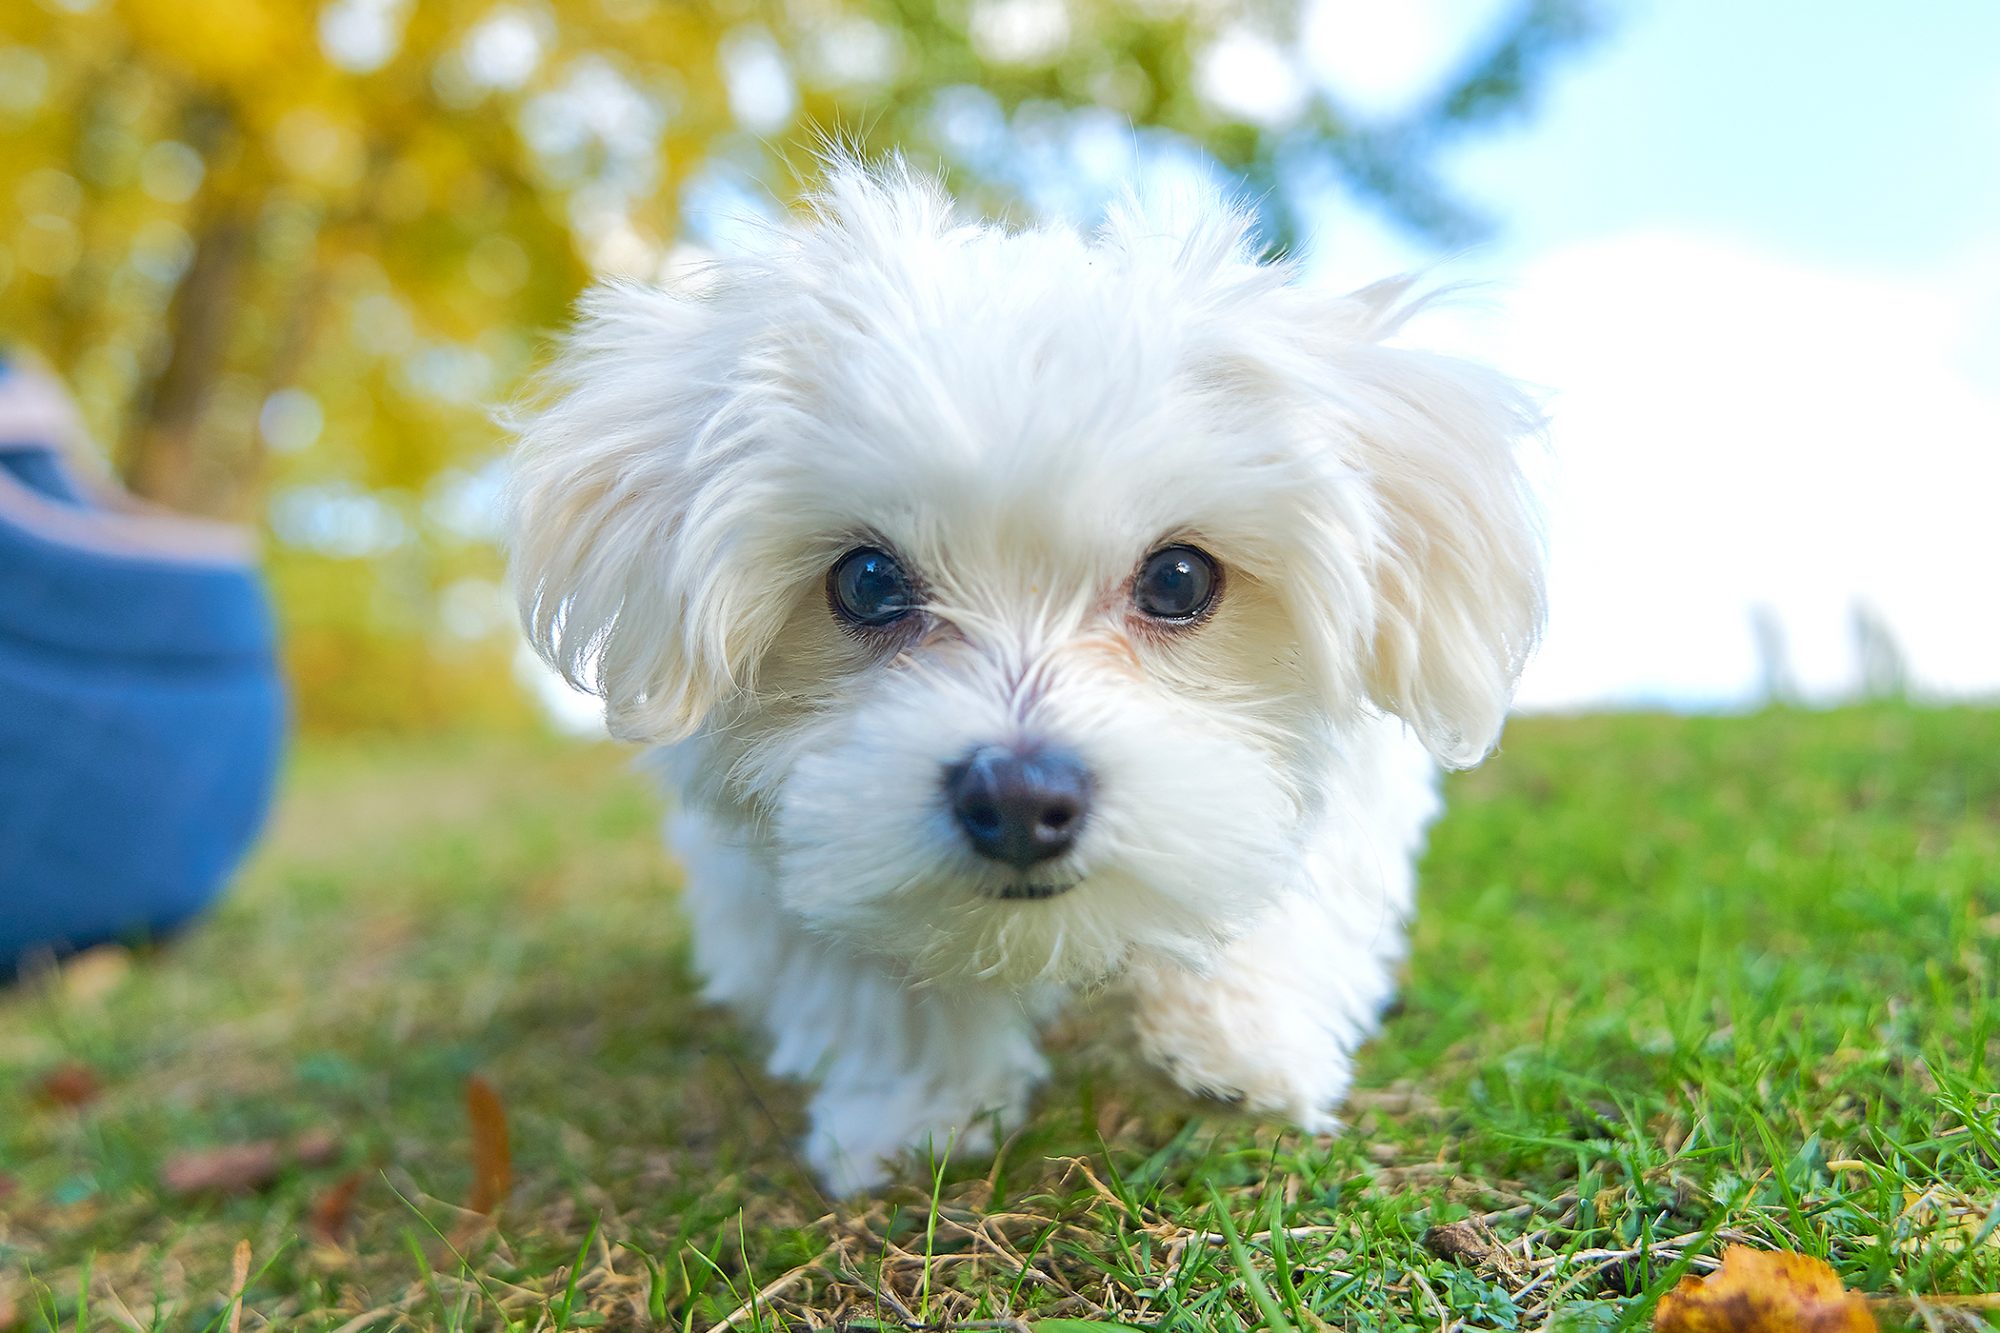 عکس سگ سفید رنگ و ناز مالتیز برای پس زمینه با کیفیت اچ دی